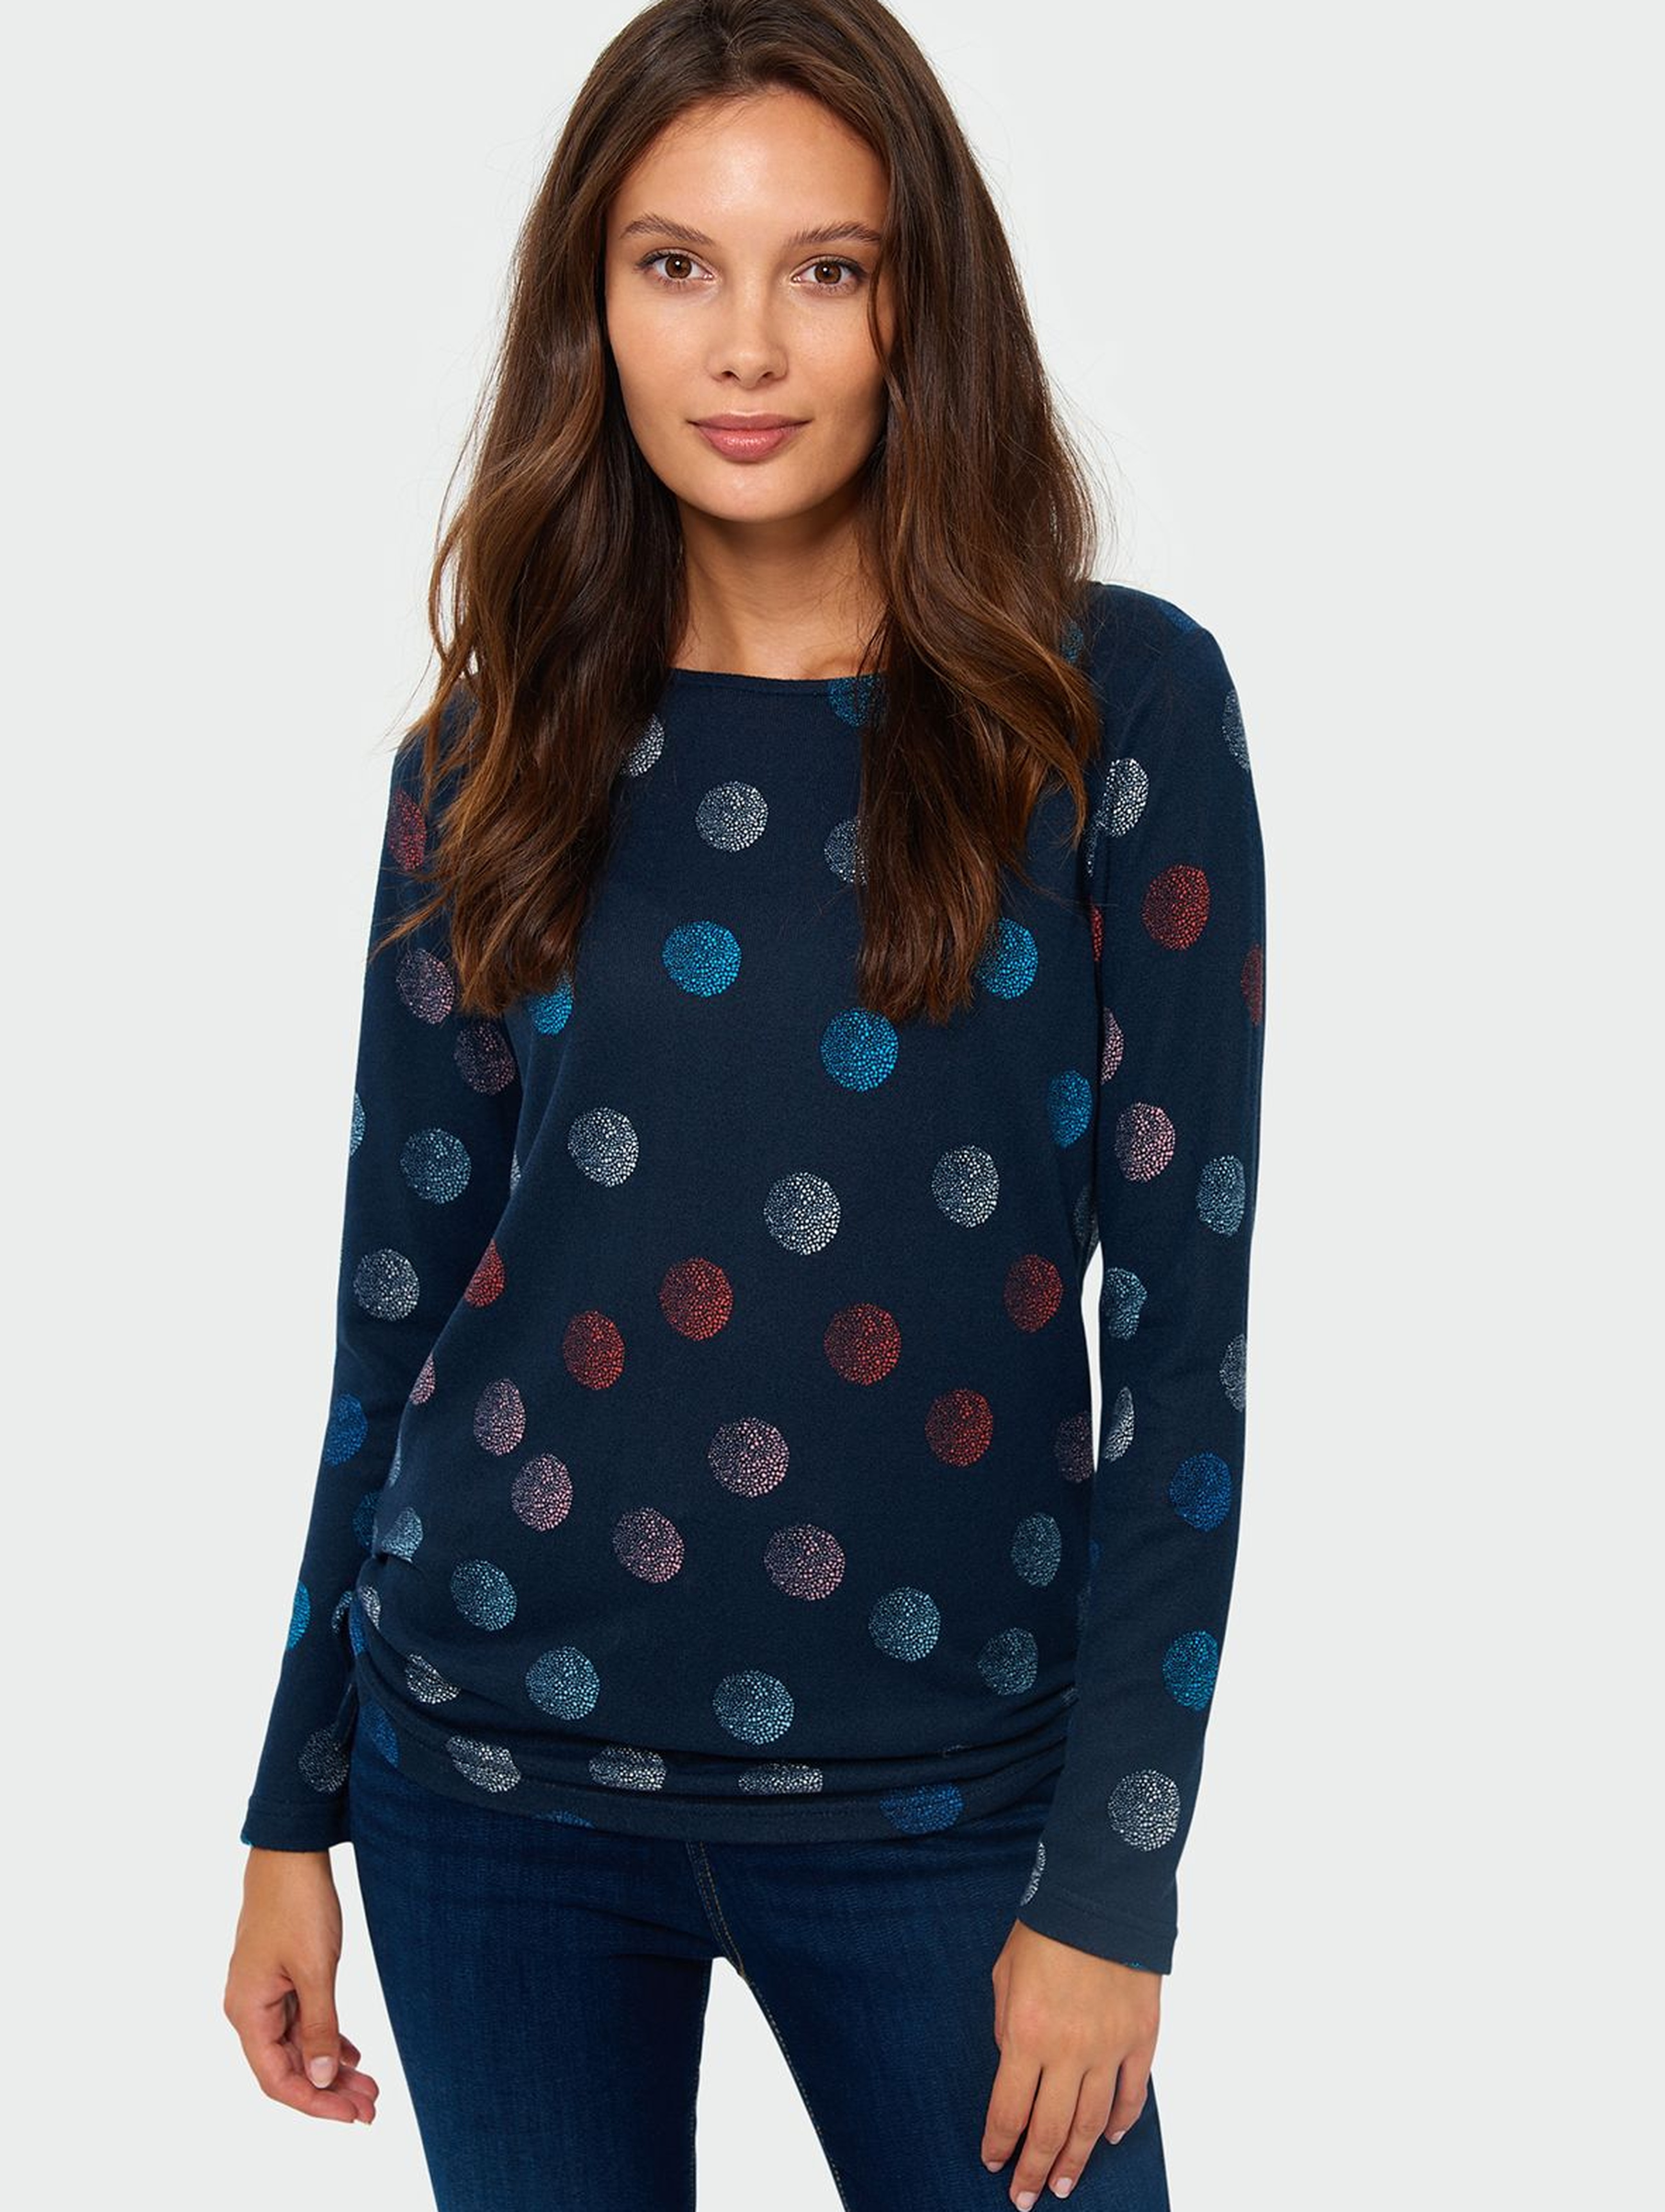 Sweter damski w kolorowe kółka - granatowy